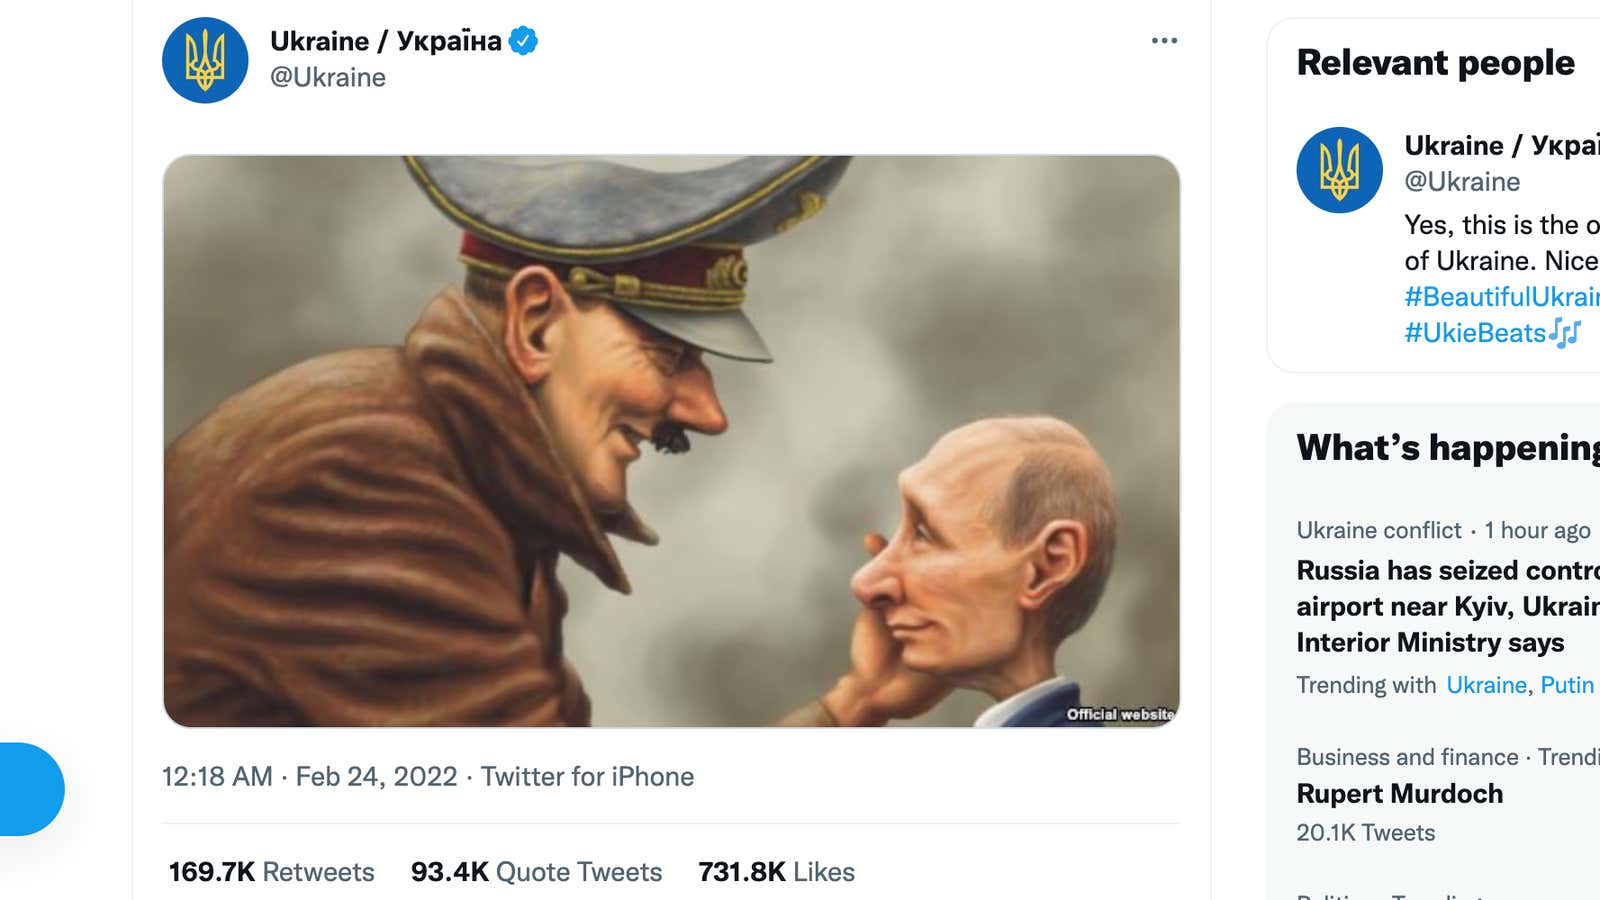 Ukraine tweeted a cartoon comparing Putin to Hitler.